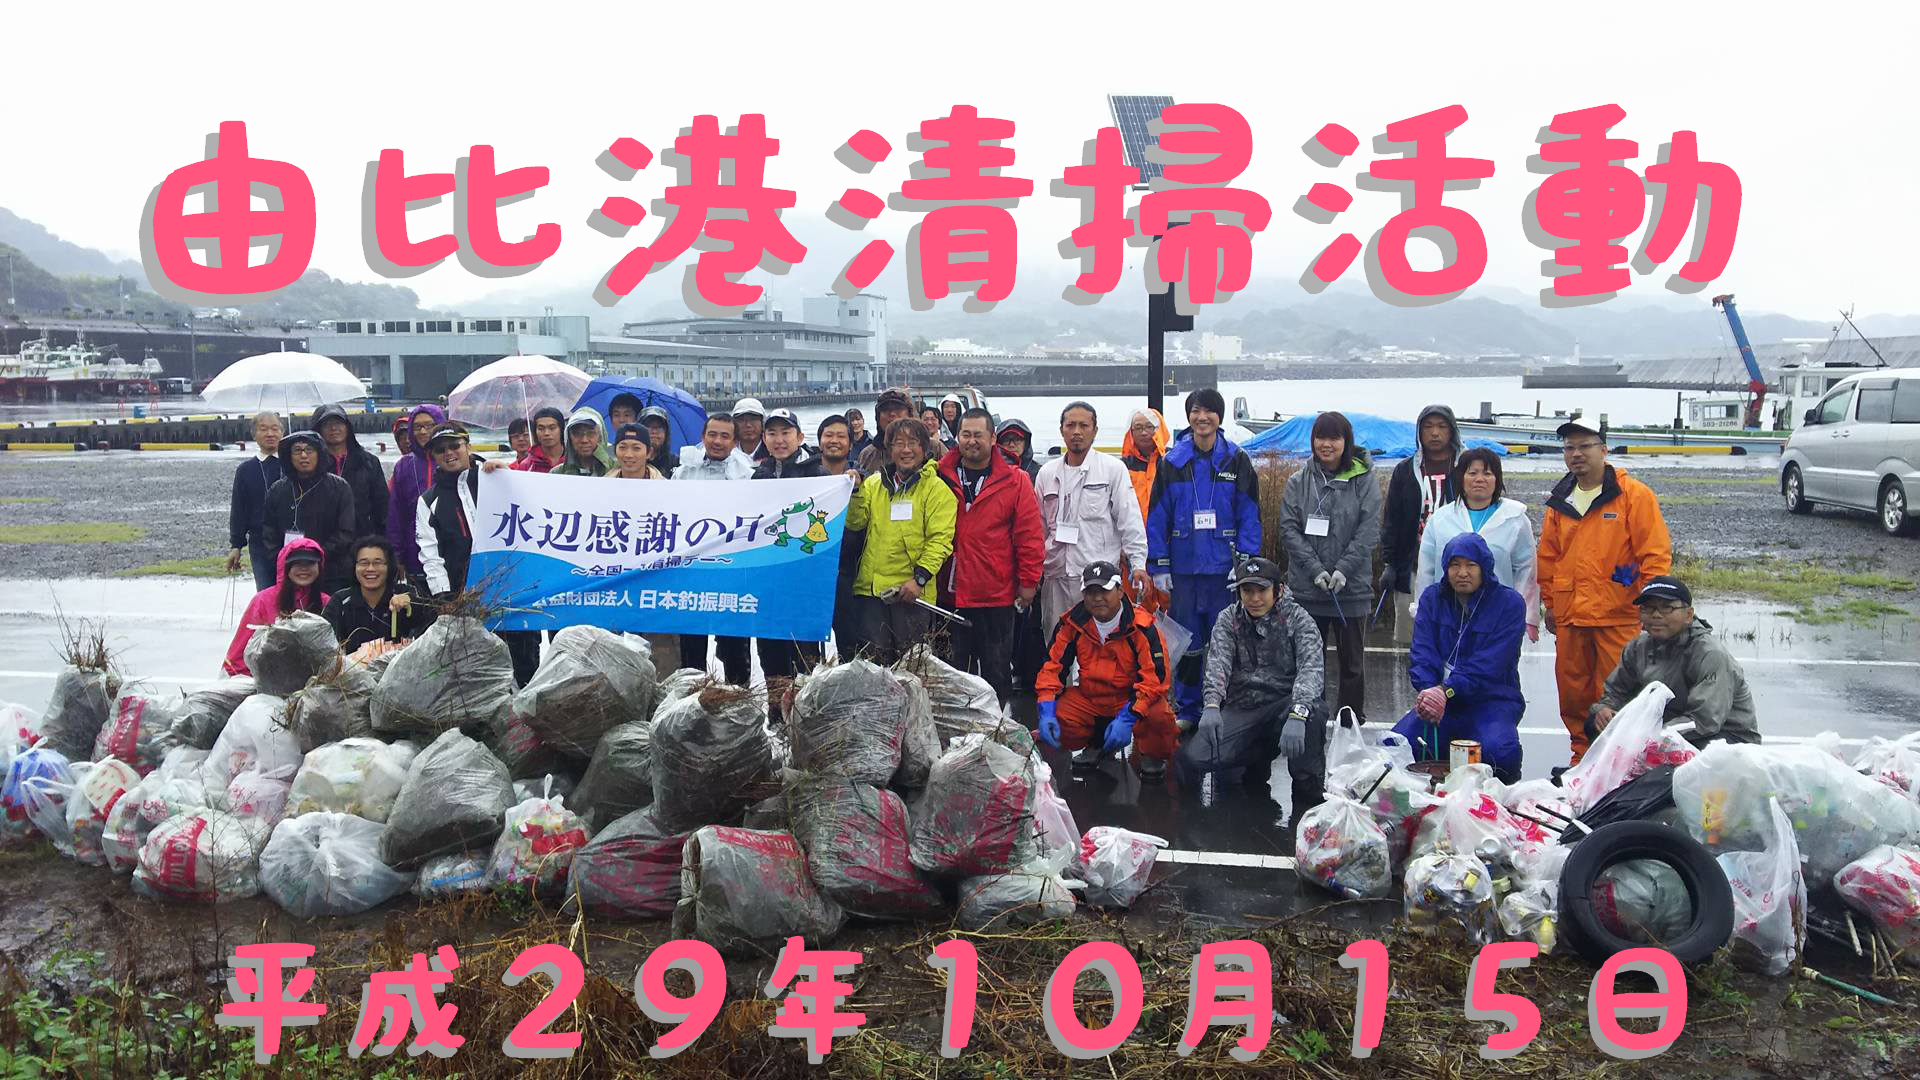 昨年１０月１５日の清掃活動の模様です。
雨の中、皆さんご協力ありがとうございました！！
富士店：石川店長もご協力くださいました!(^^)!